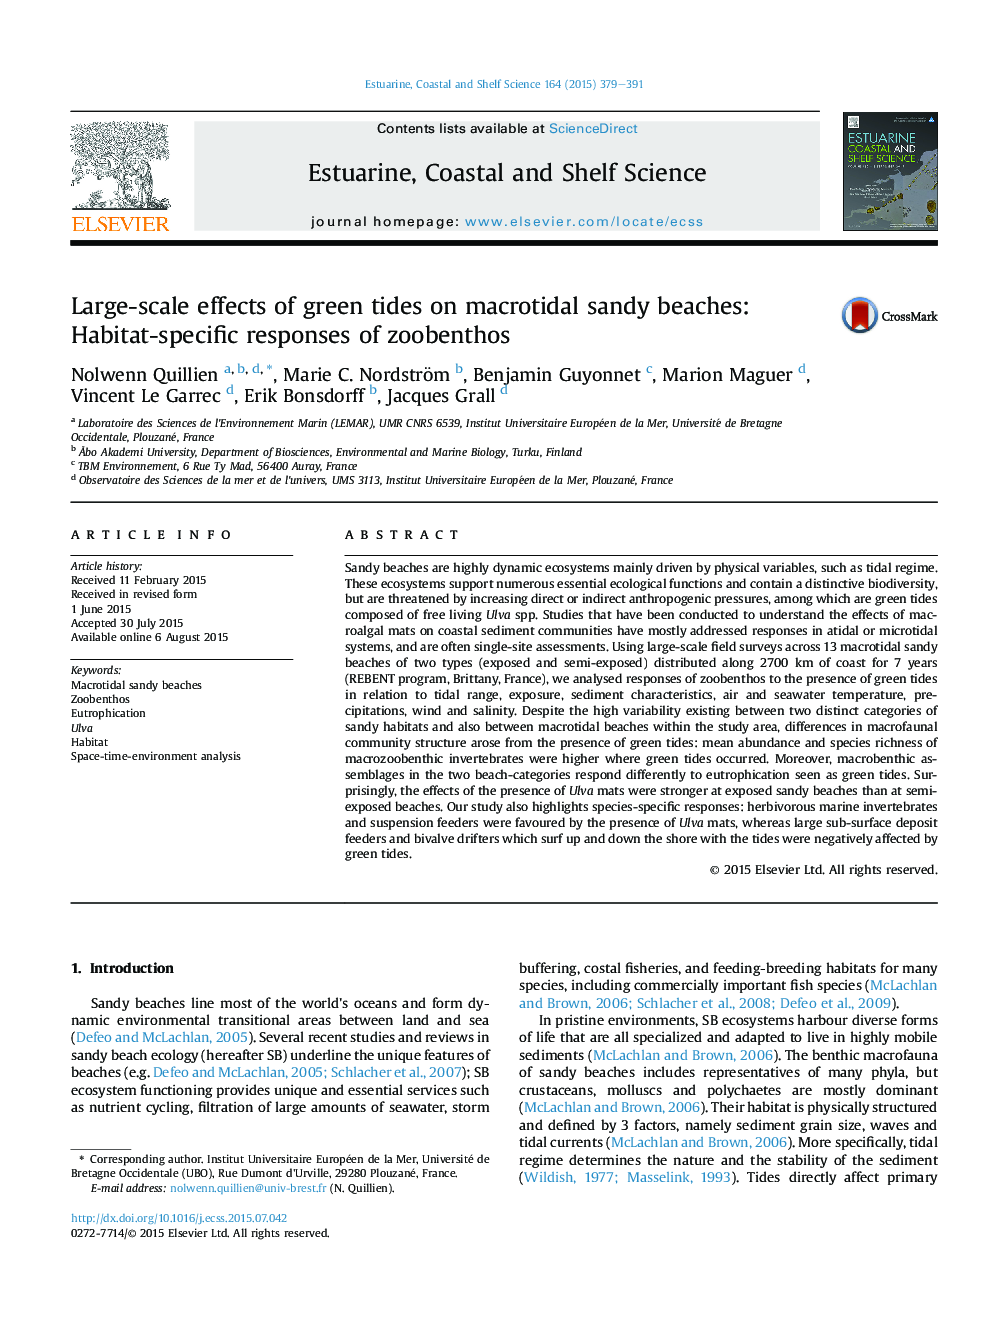 اثرات گسترده ای از جزر و مد های سبز در سواحل شنی های بزرگ ما: پاسخ های ویژه زیستگاه زوبتوس 